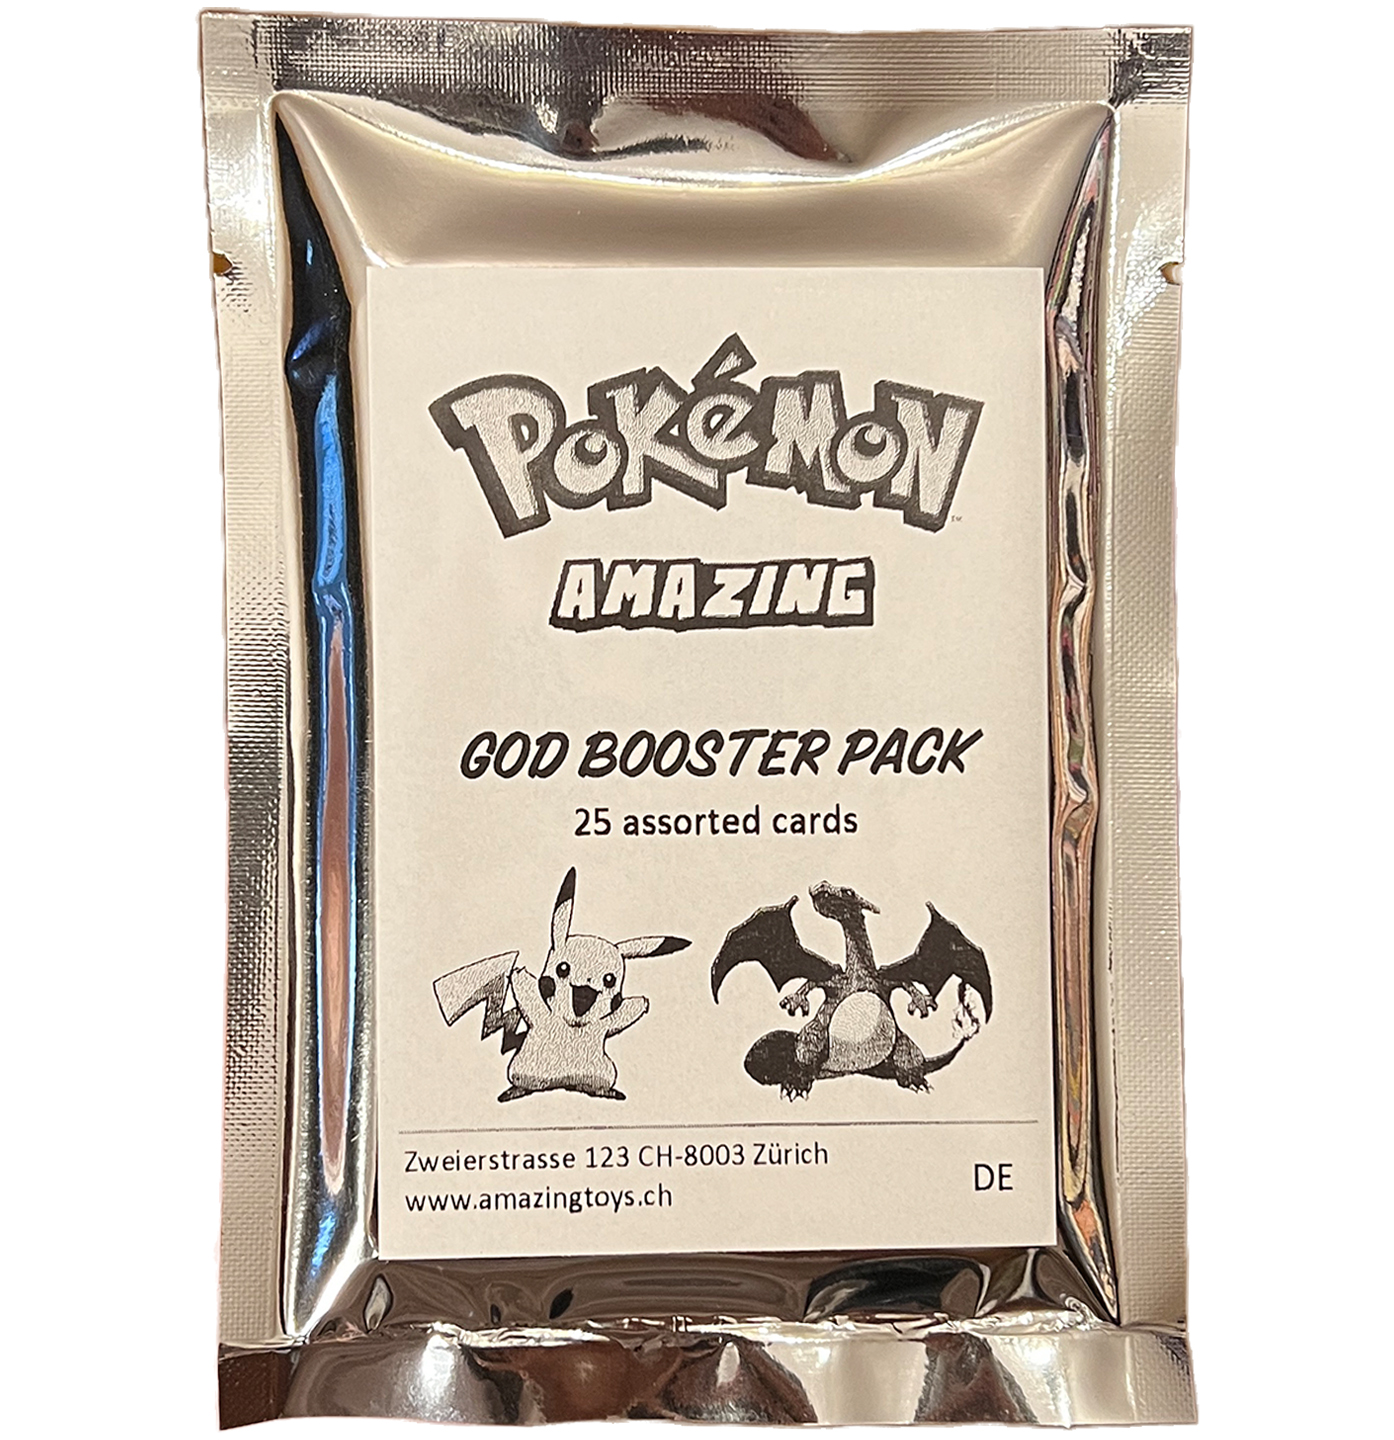 Pokémon Amazing God Booster Pack - Wave 1 - DE